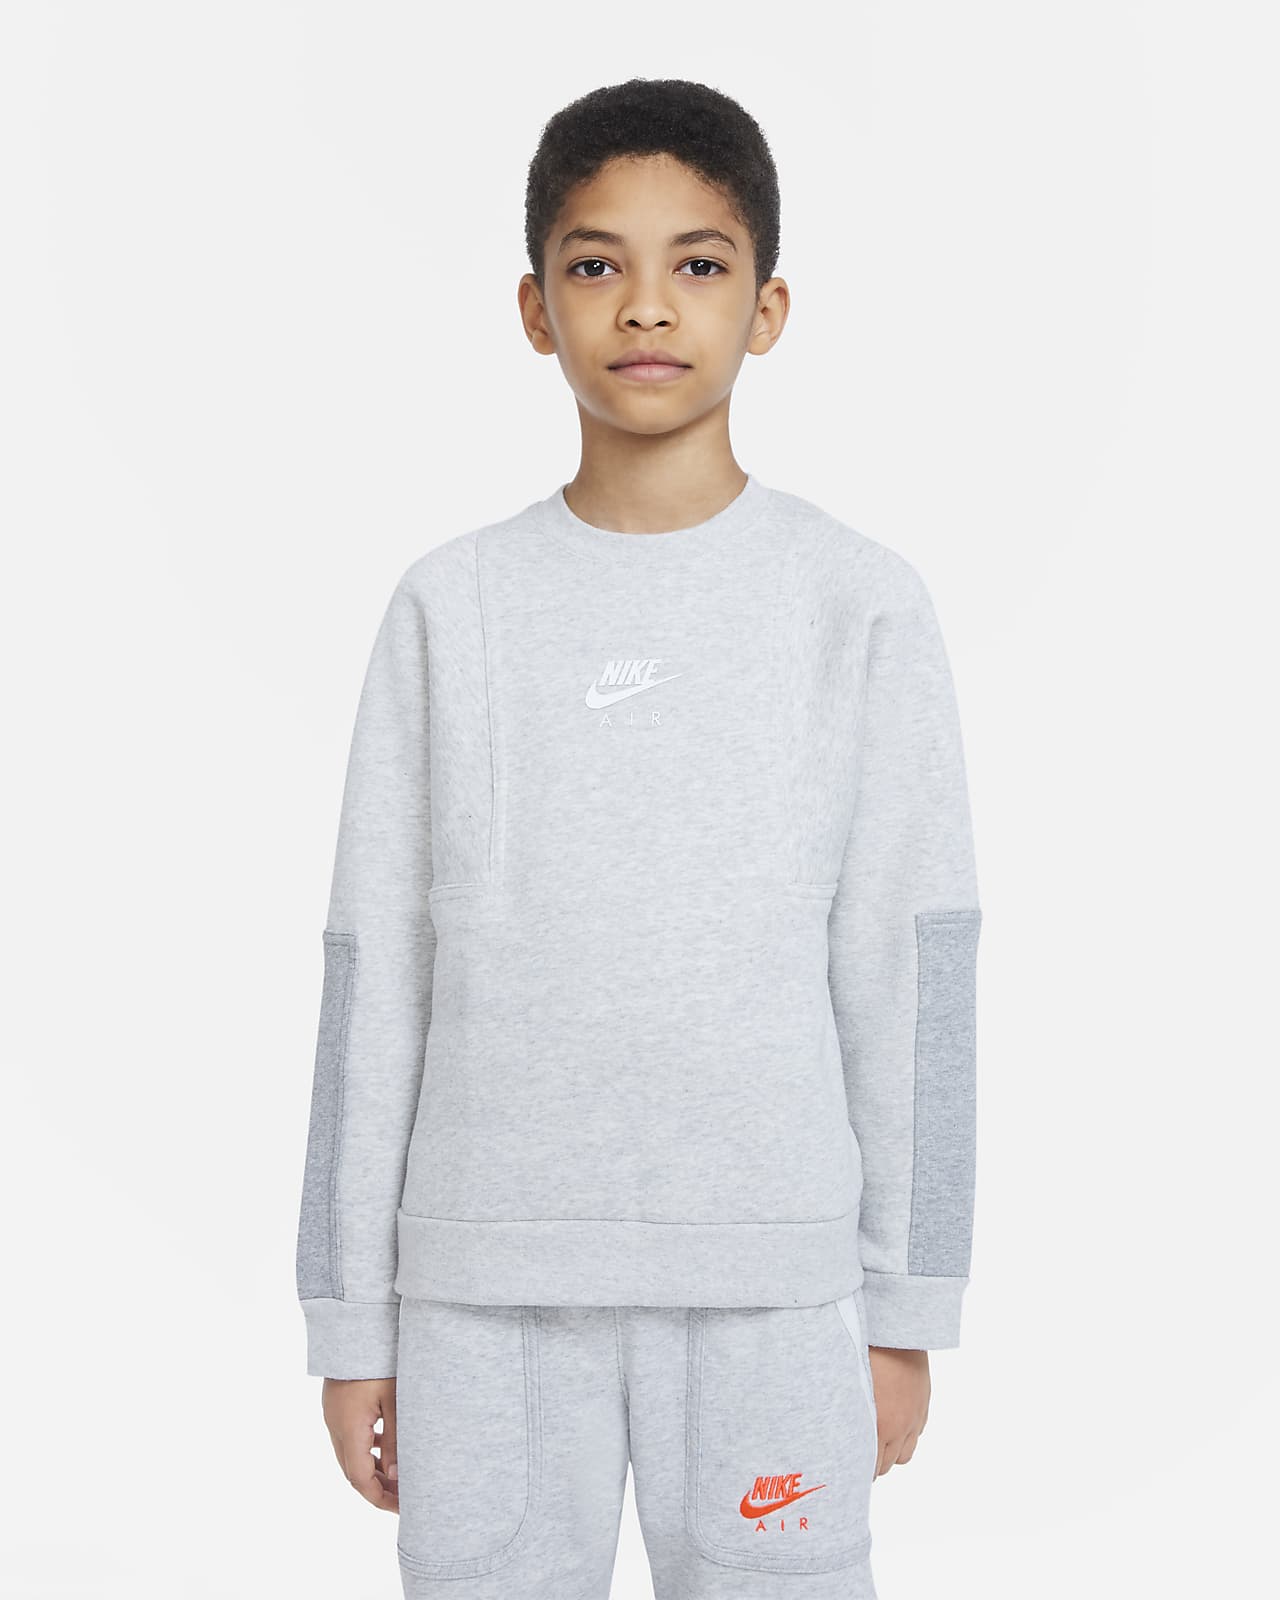 Nike Air Older Kids' (Boys') Sweatshirt